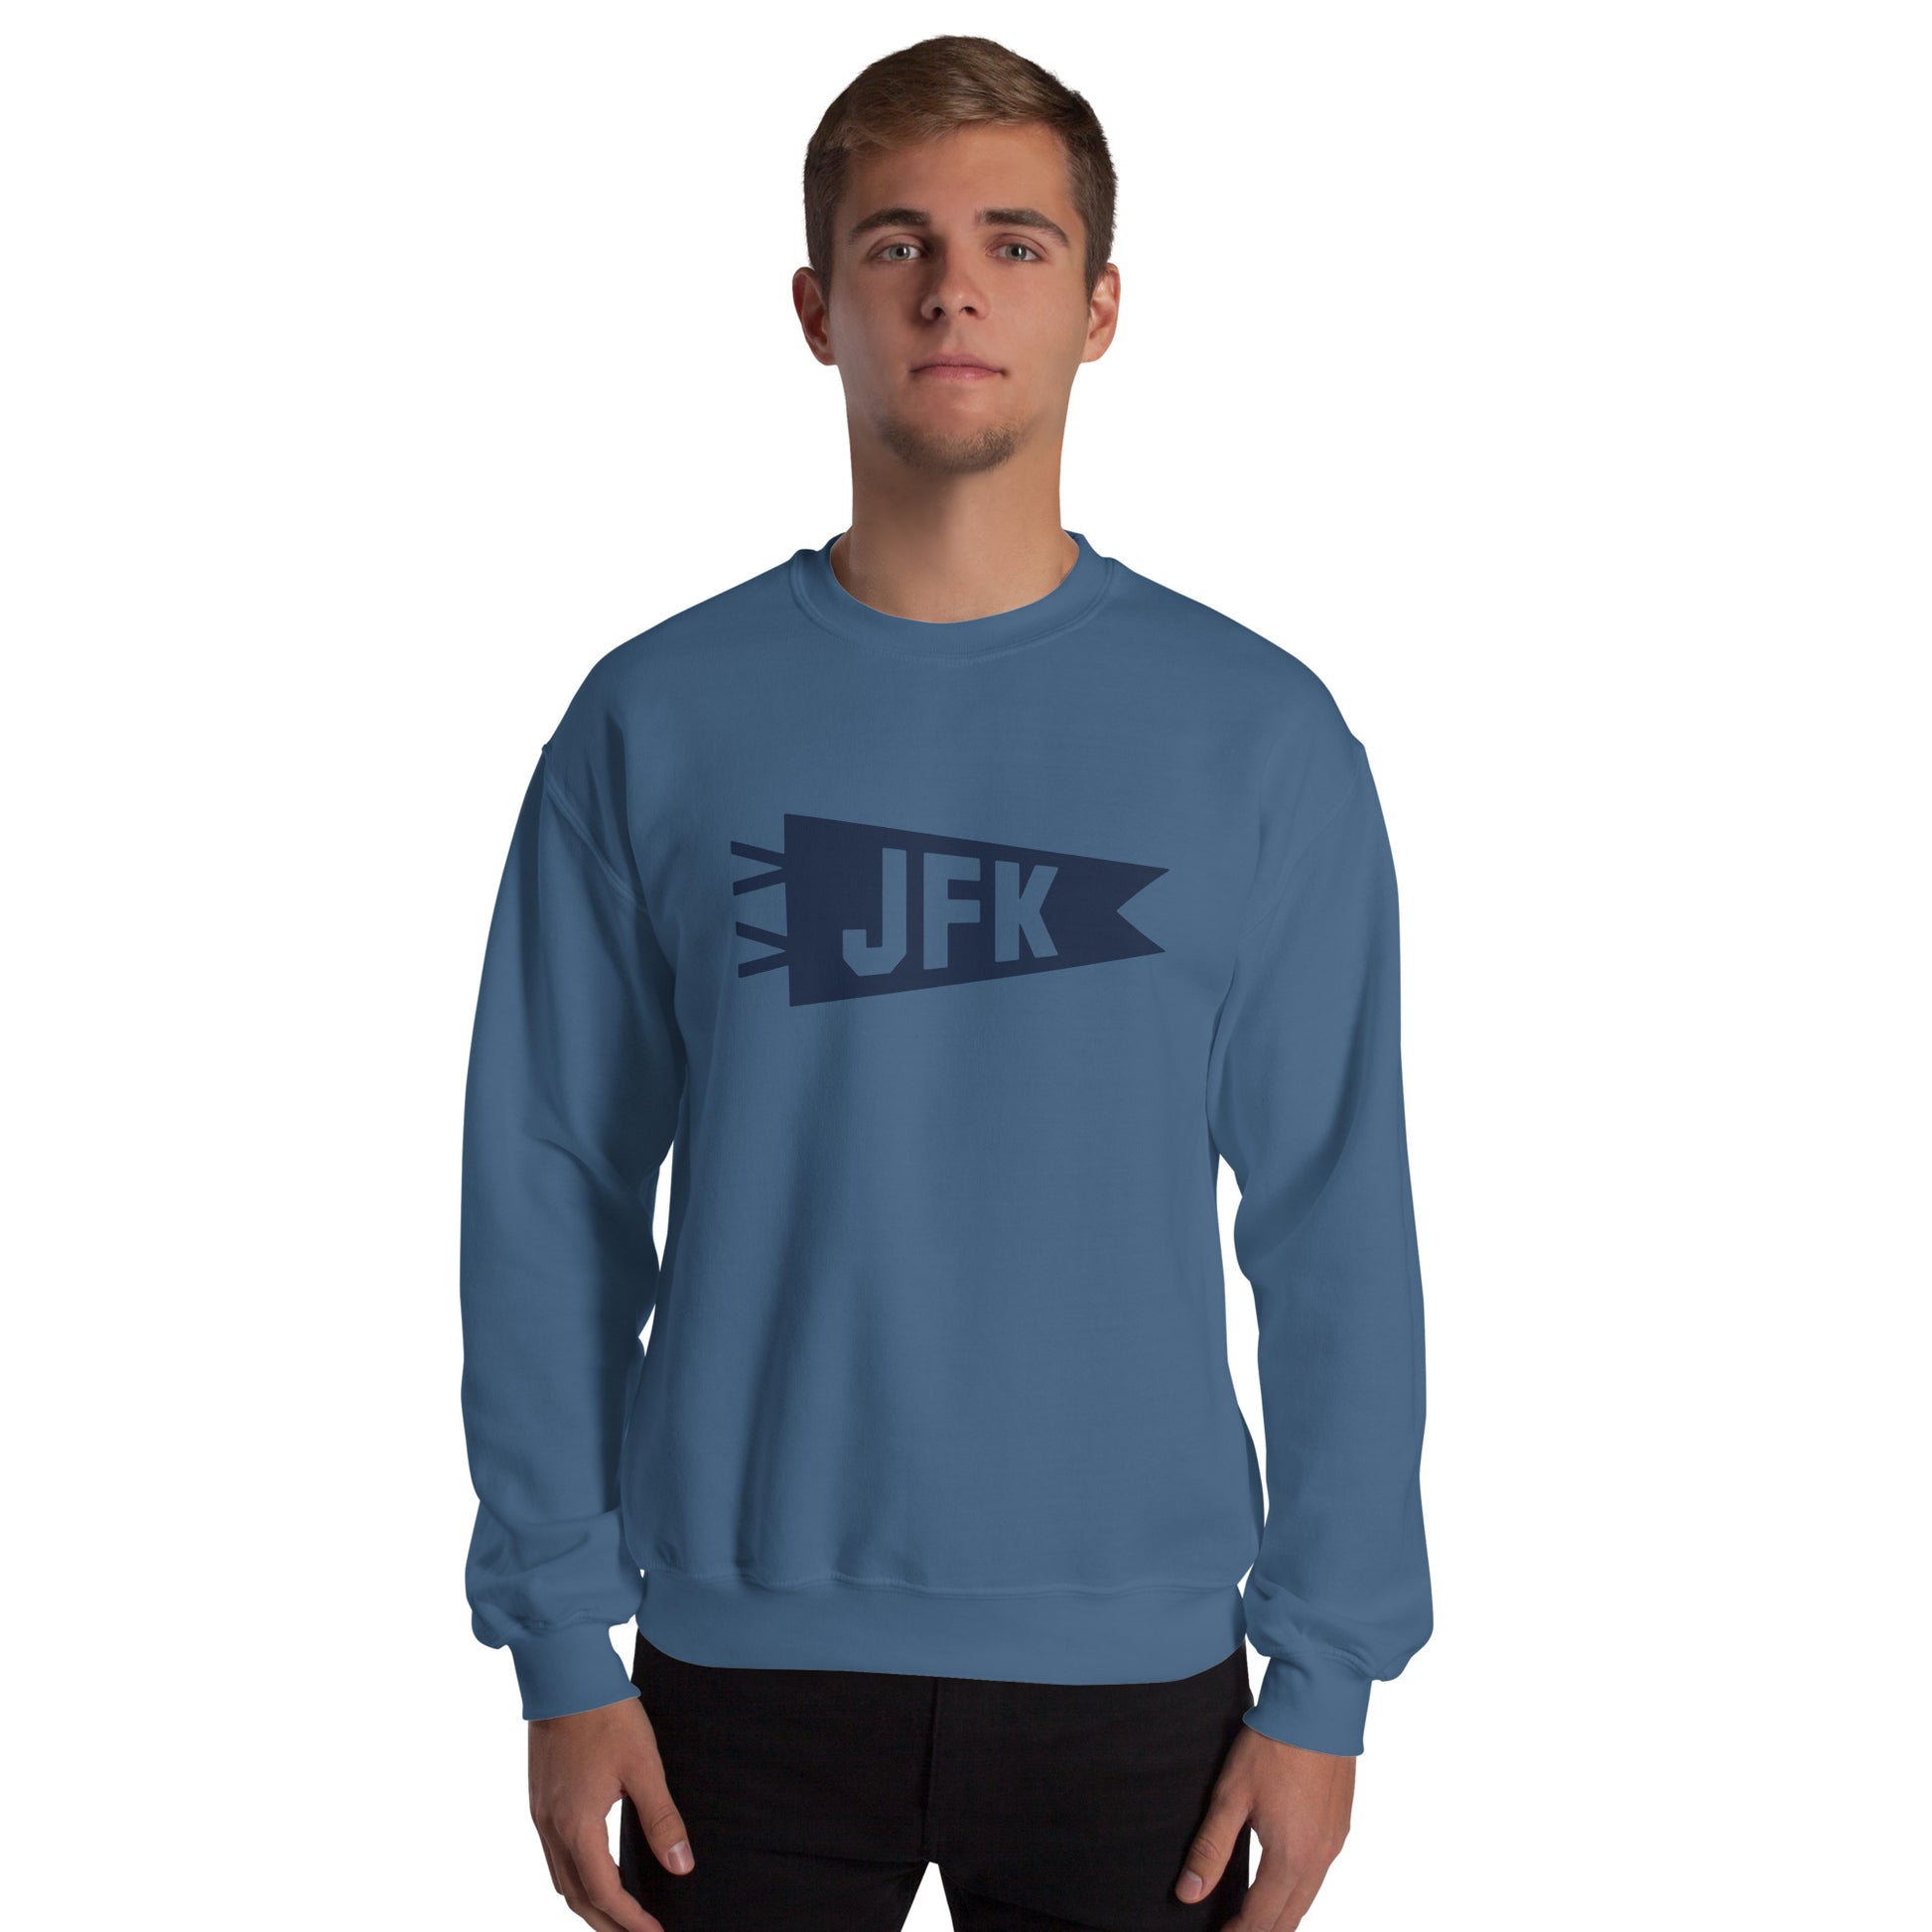 Airport Code Sweatshirt - Navy Blue Graphic • JFK New York City • YHM Designs - Image 06